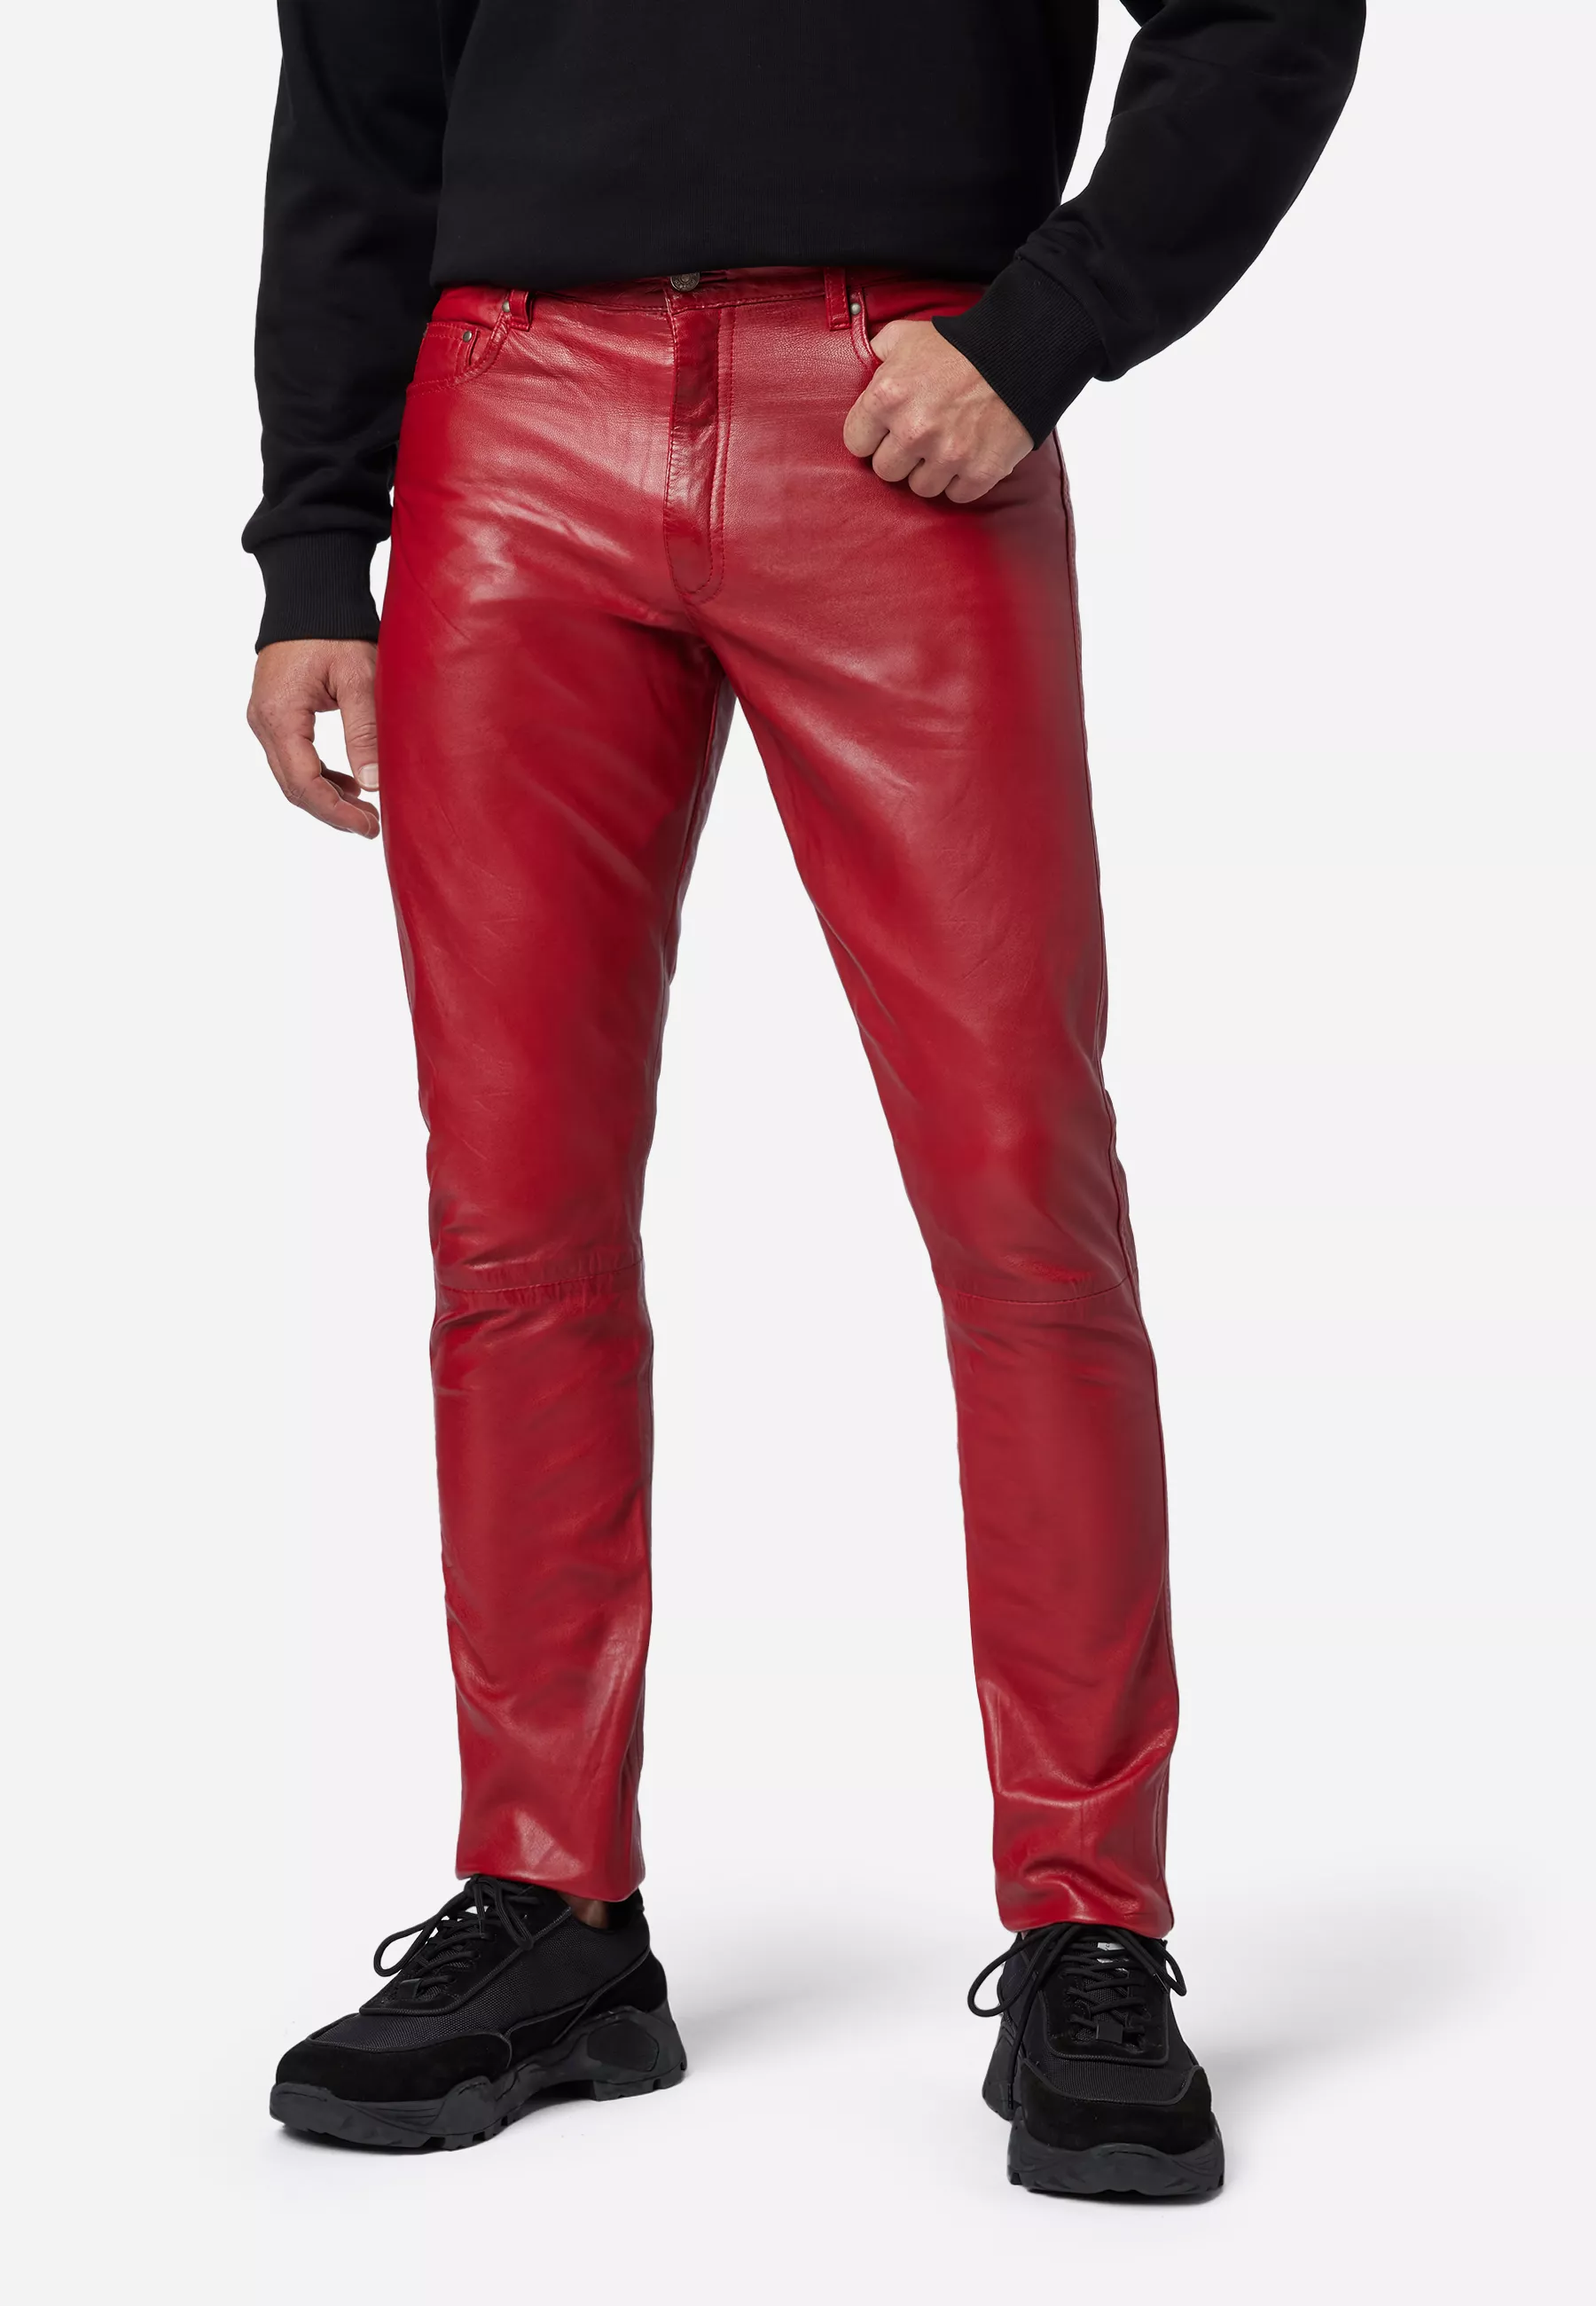 Herren Lederhose Slimfit in Rot von Ricano, Frontansicht am Model